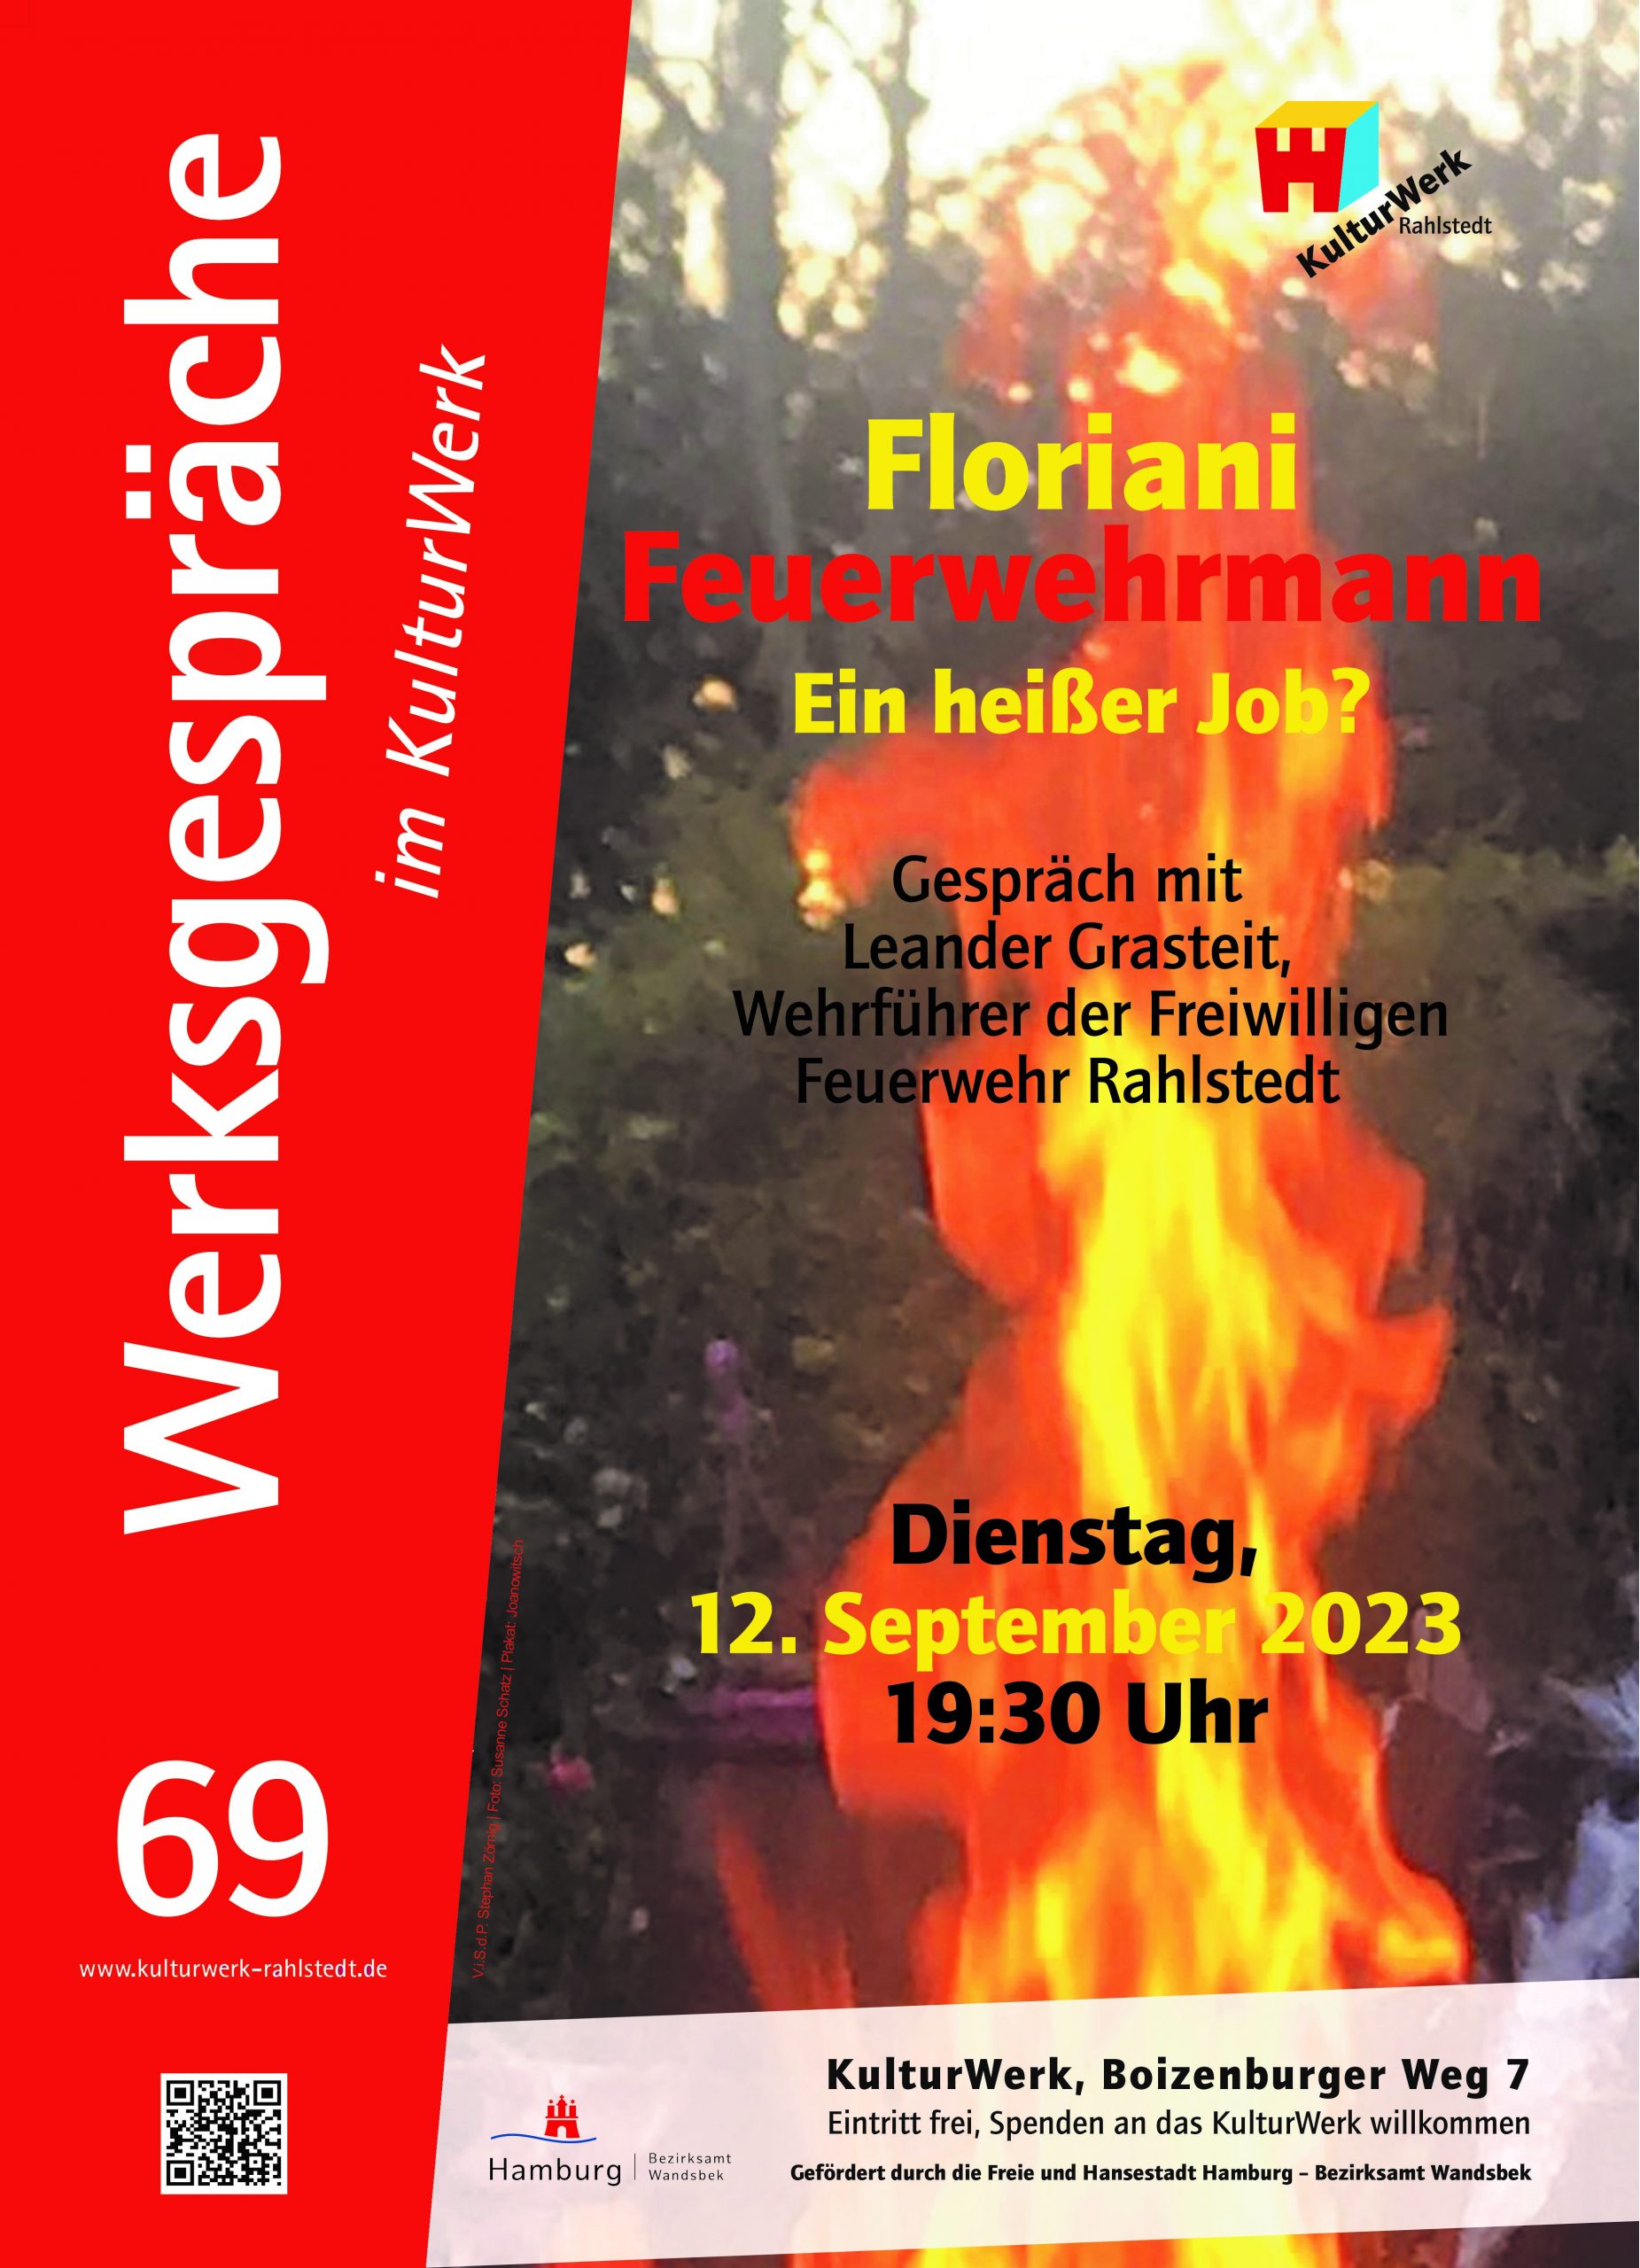 69. Werksgespräch: Floriani Feuerwehrmann - Ein heißer Job?